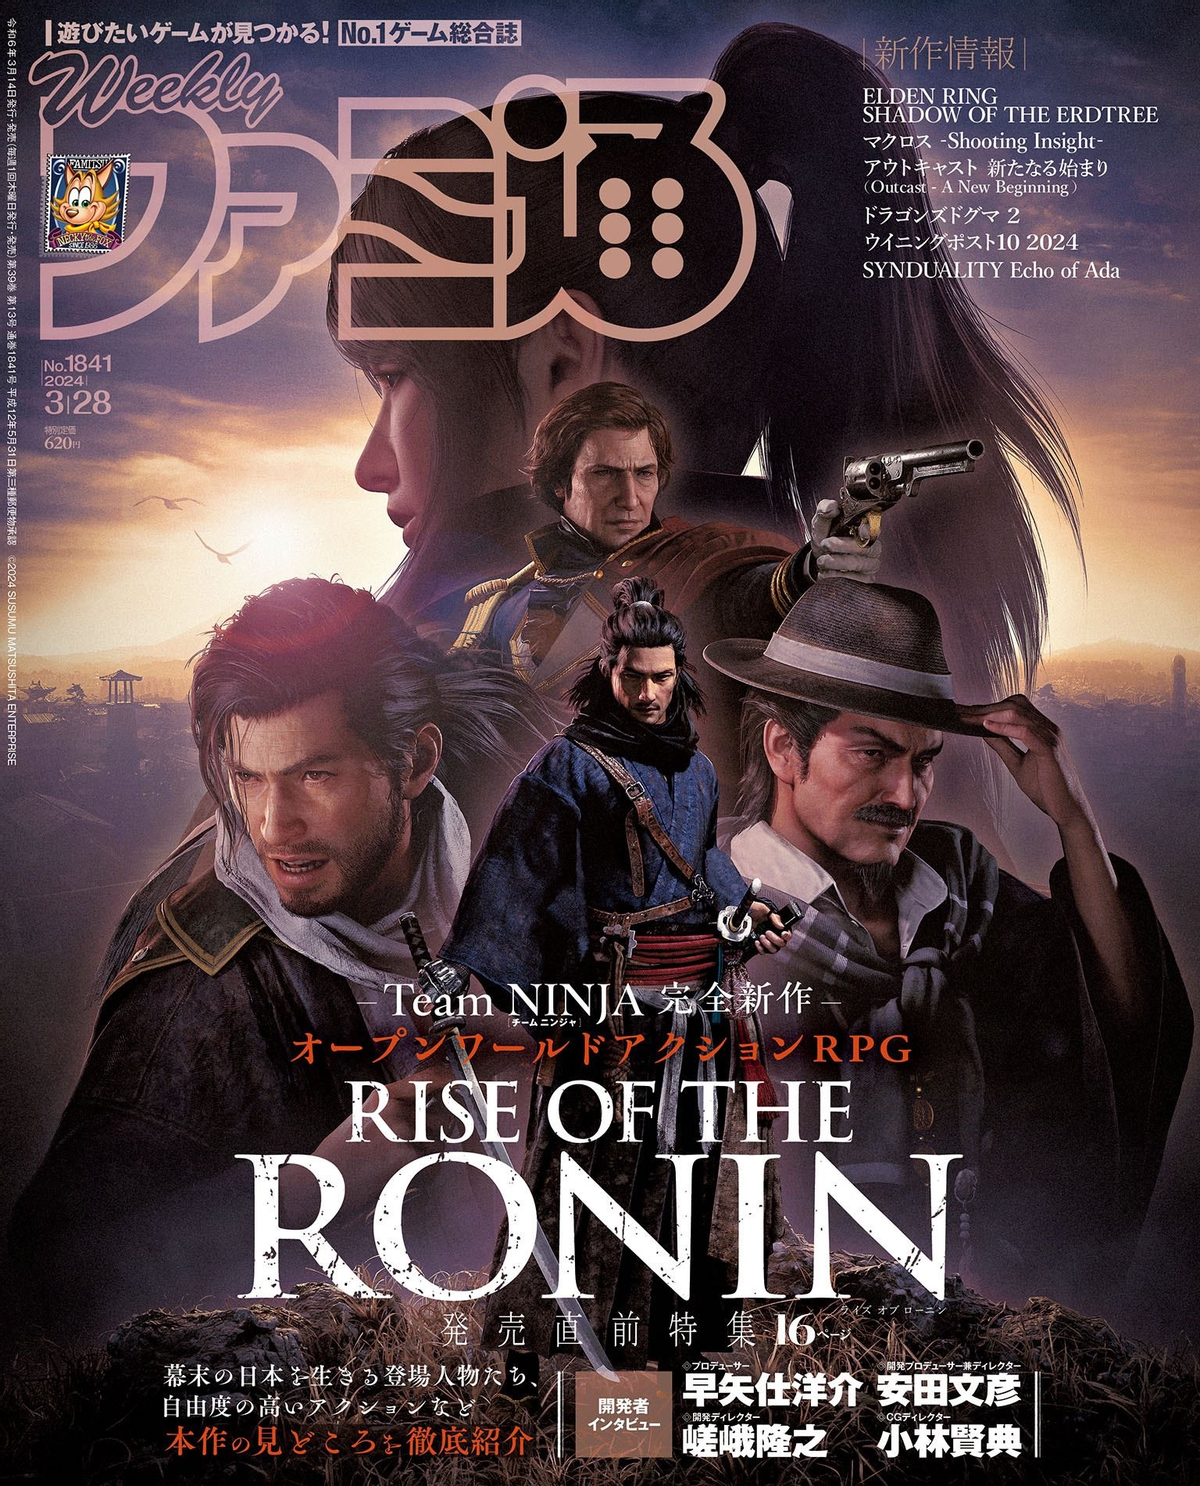 Rise of the Ronin на обложке Famitsu и в превью от ведущих СМИ